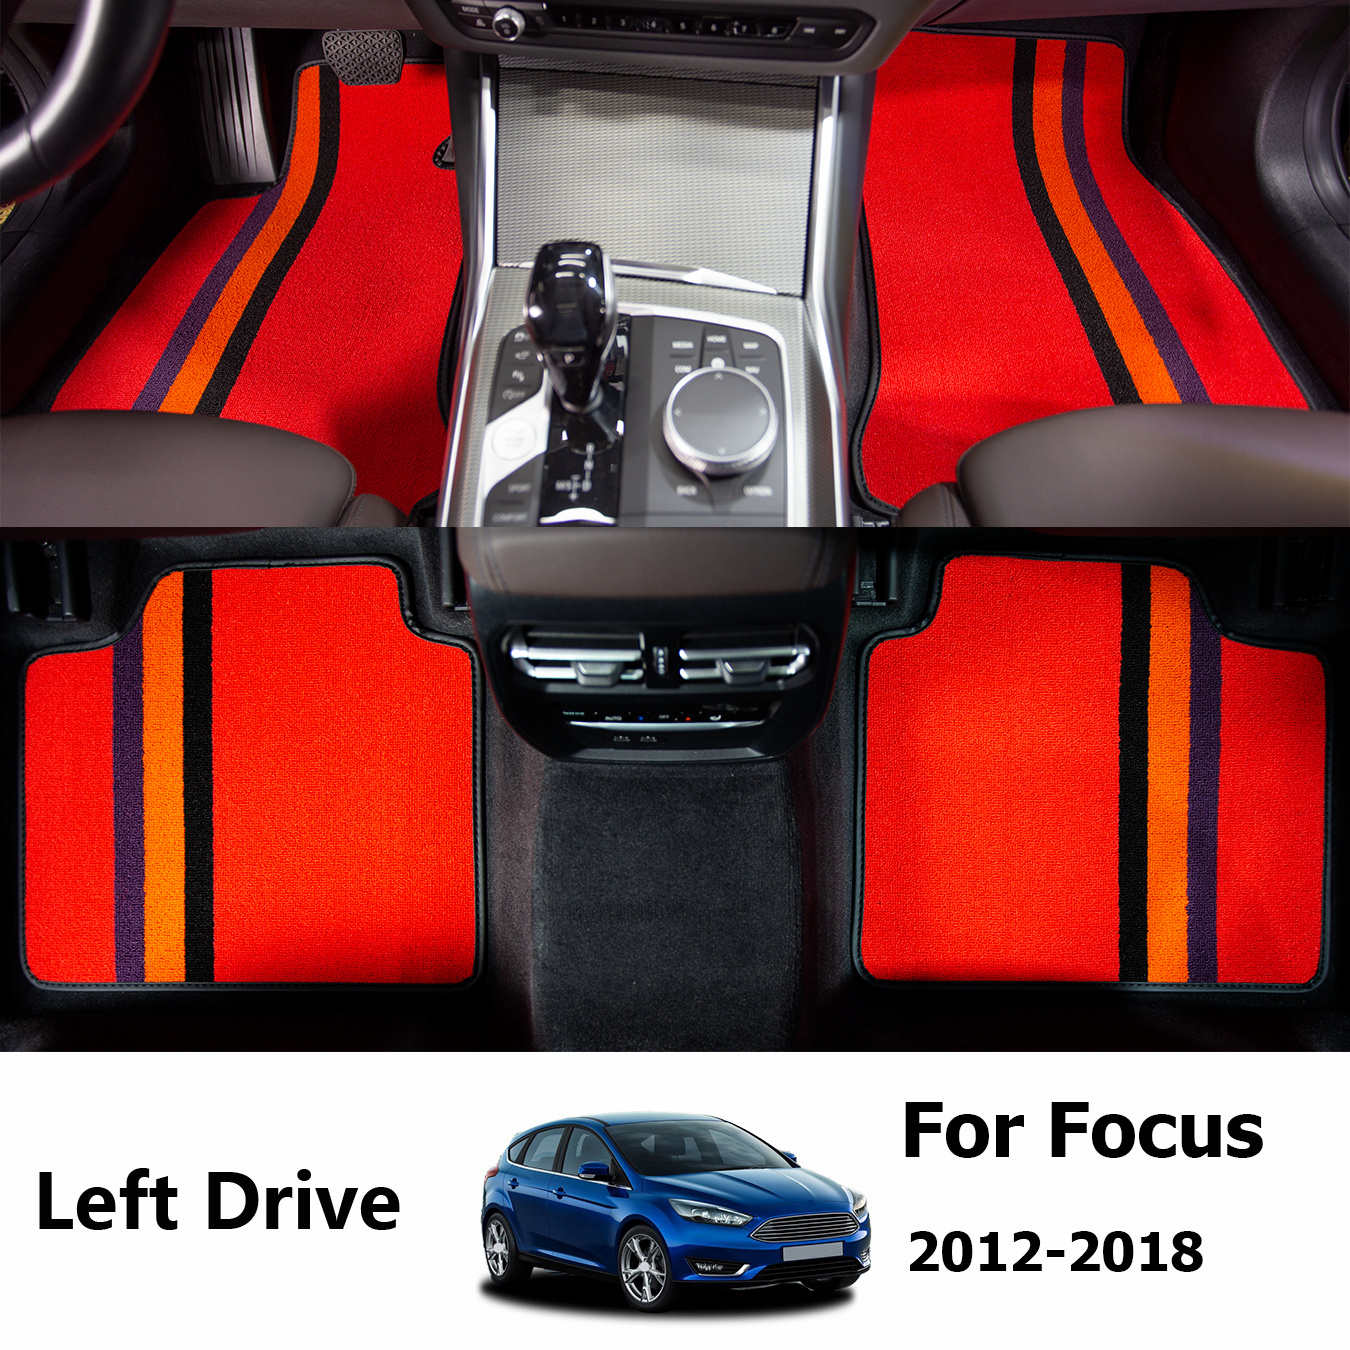 Personnalisé Luxe Voiture Tapis Pour En Ford Focus Rs MK3 Inc Logos Bleu  Bords